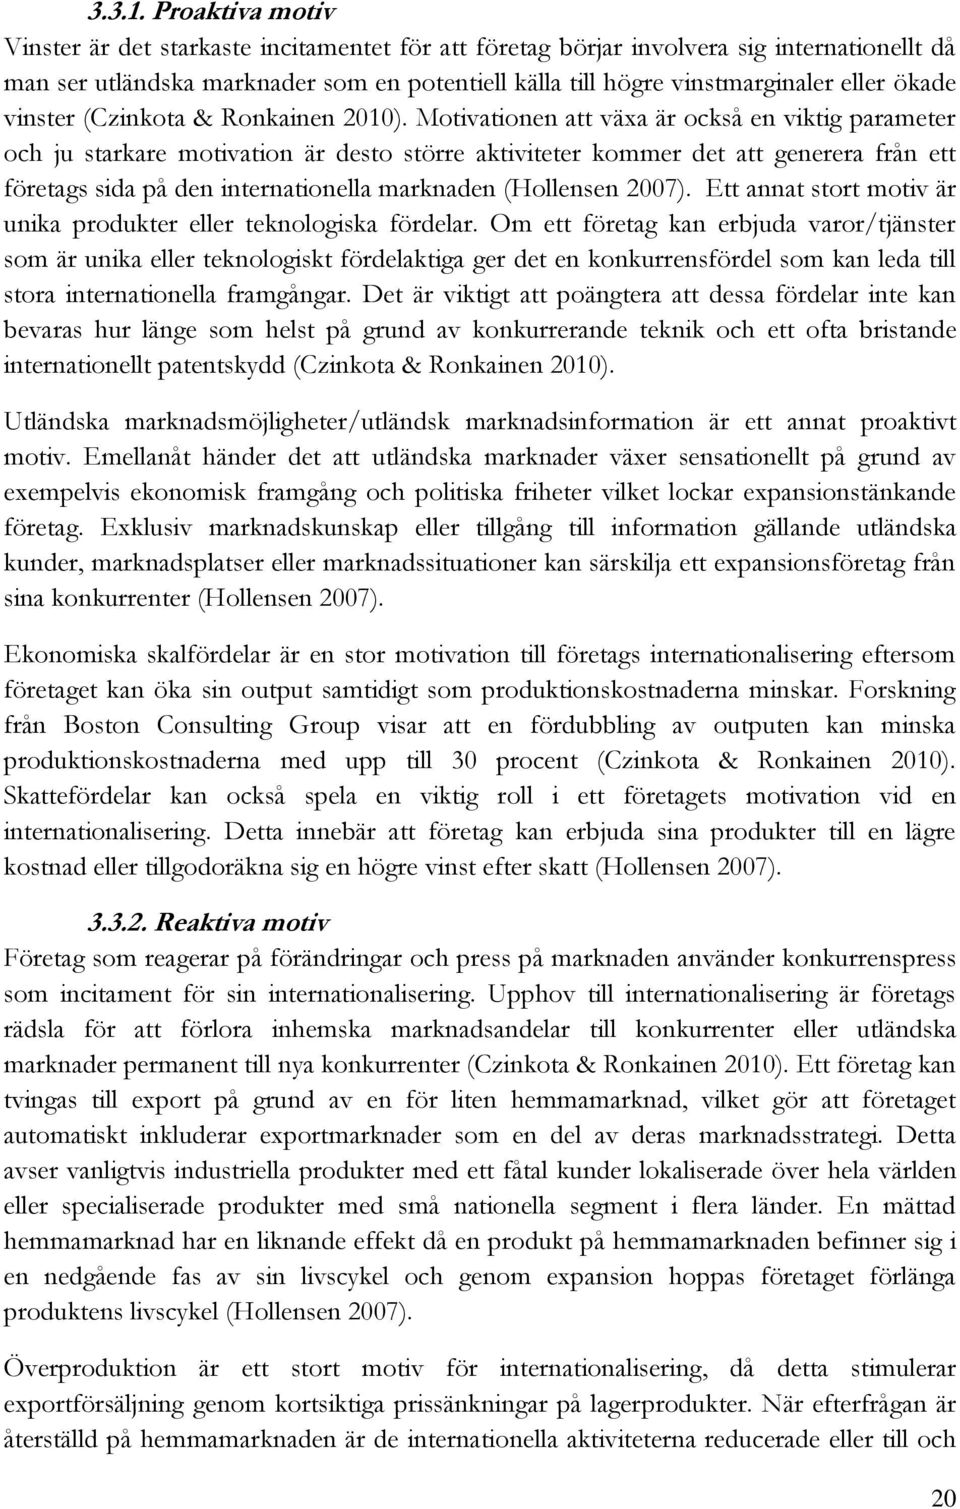 ökade vinster (Czinkota & Ronkainen 2010).